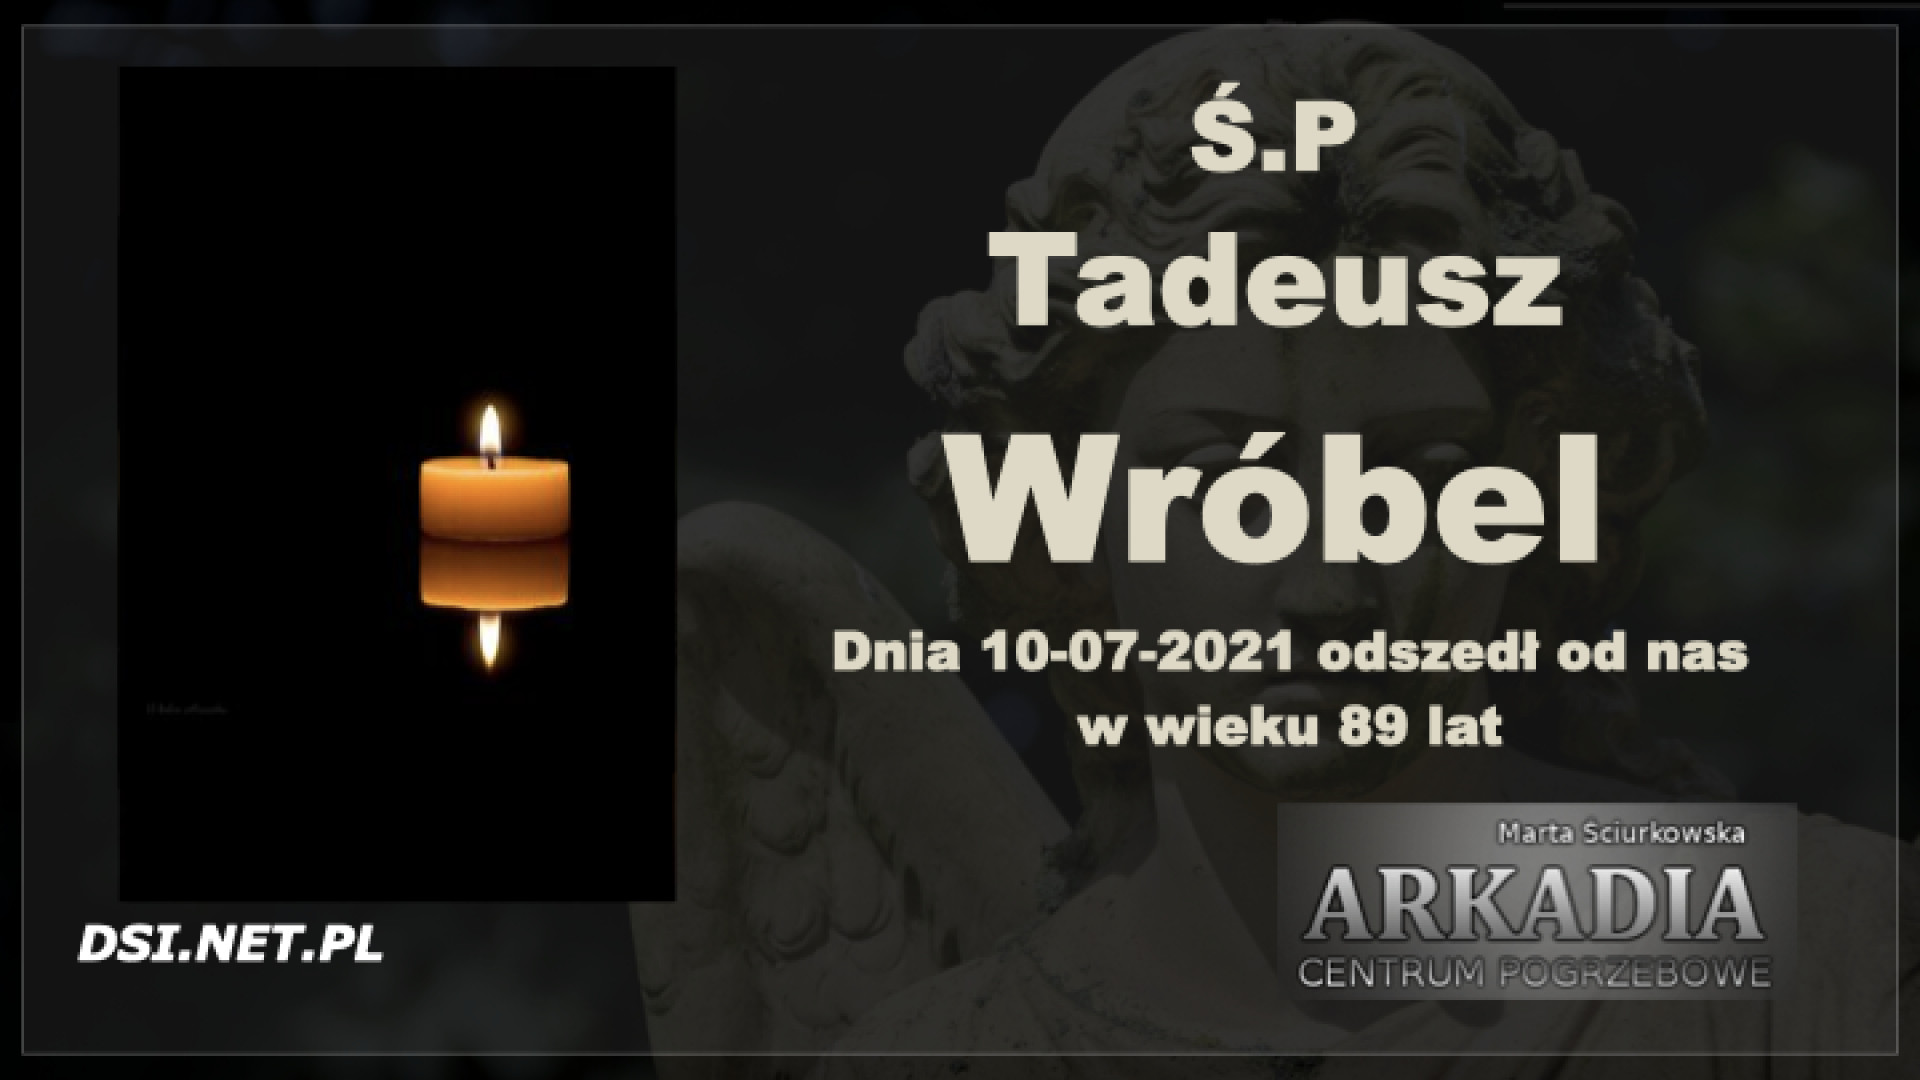 Ś.P. Tadeusz Wróbel